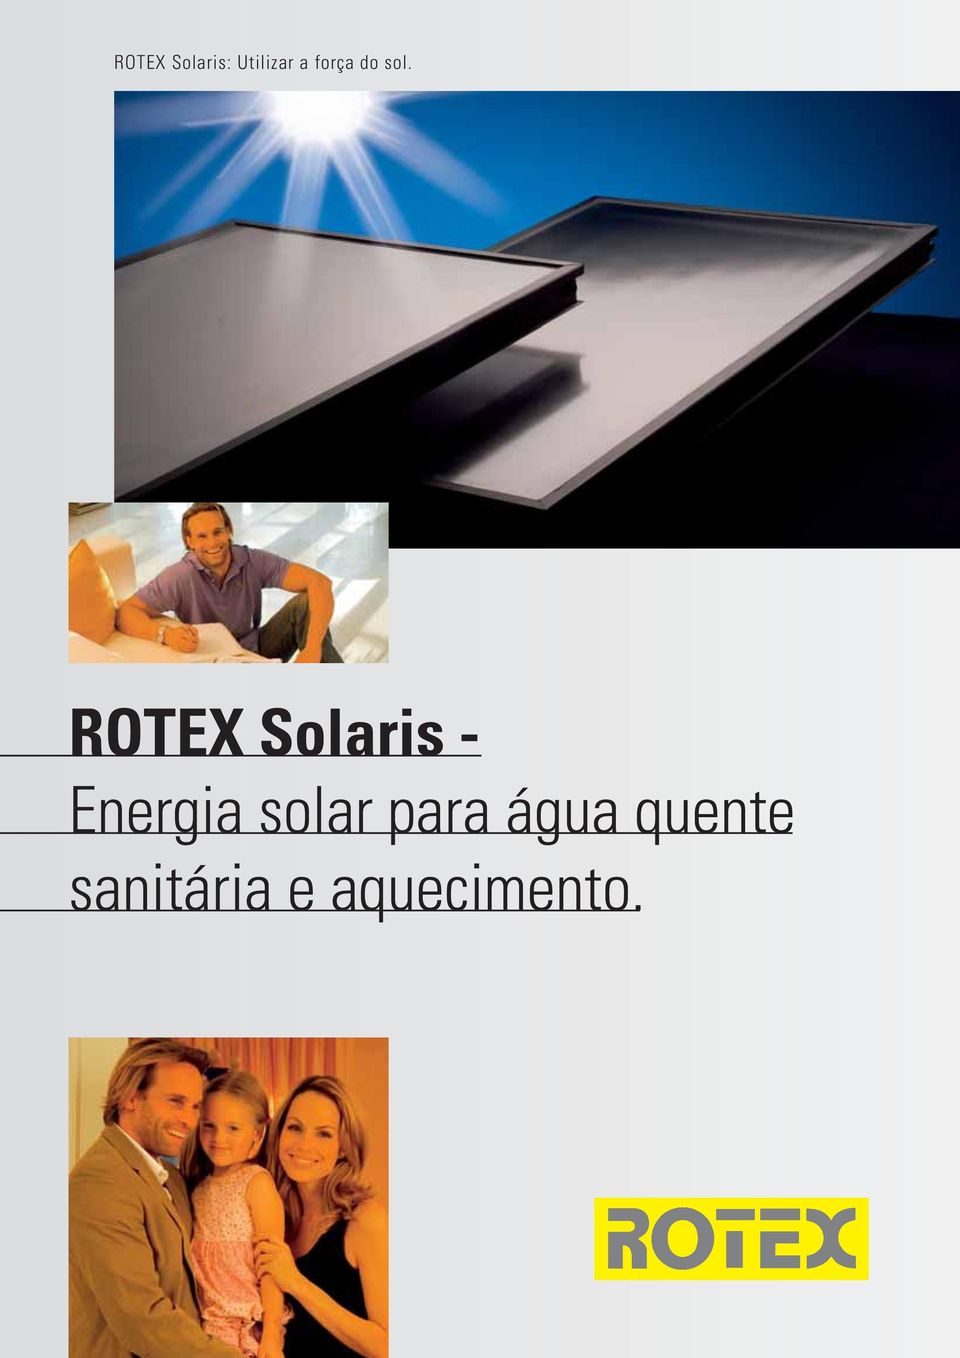 ROTEX Solaris - Energia